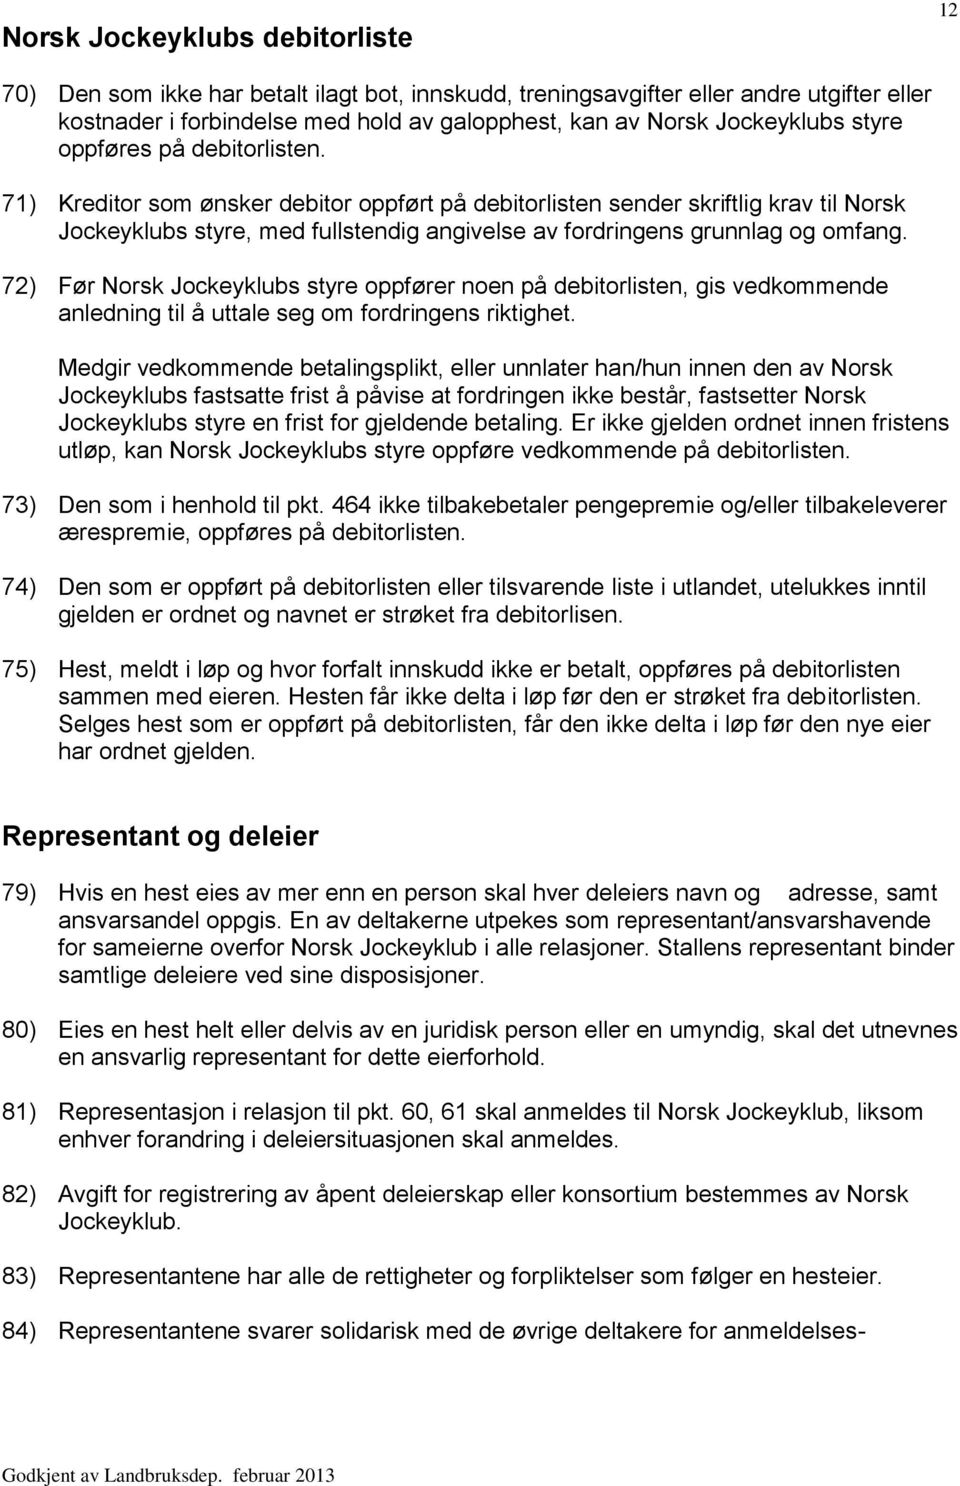 71) Kreditor som ønsker debitor oppført på debitorlisten sender skriftlig krav til Norsk Jockeyklubs styre, med fullstendig angivelse av fordringens grunnlag og omfang.